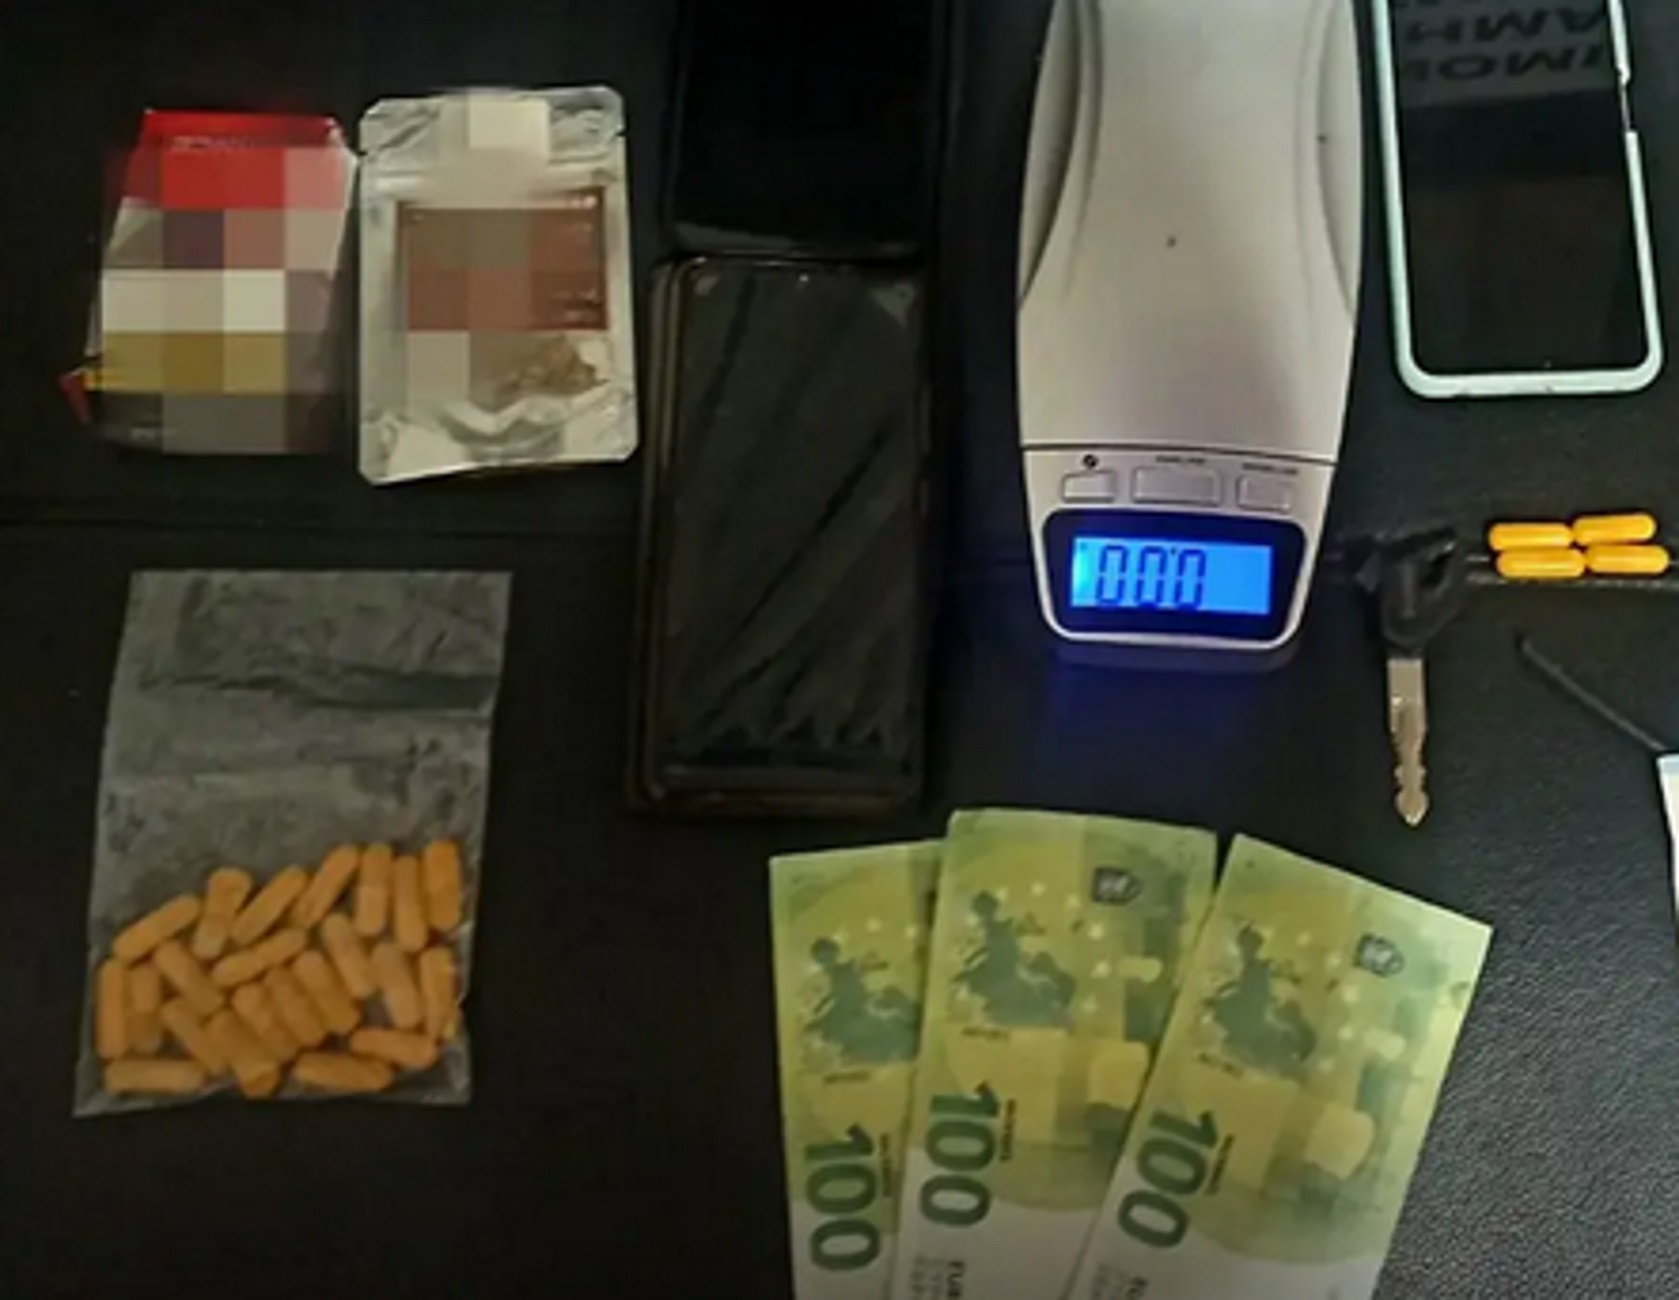 Κάλυμνος: Διακινούσαν κοκαΐνη μέσα σε αυτές τις κάψουλες, τρεις οι συλλήψεις